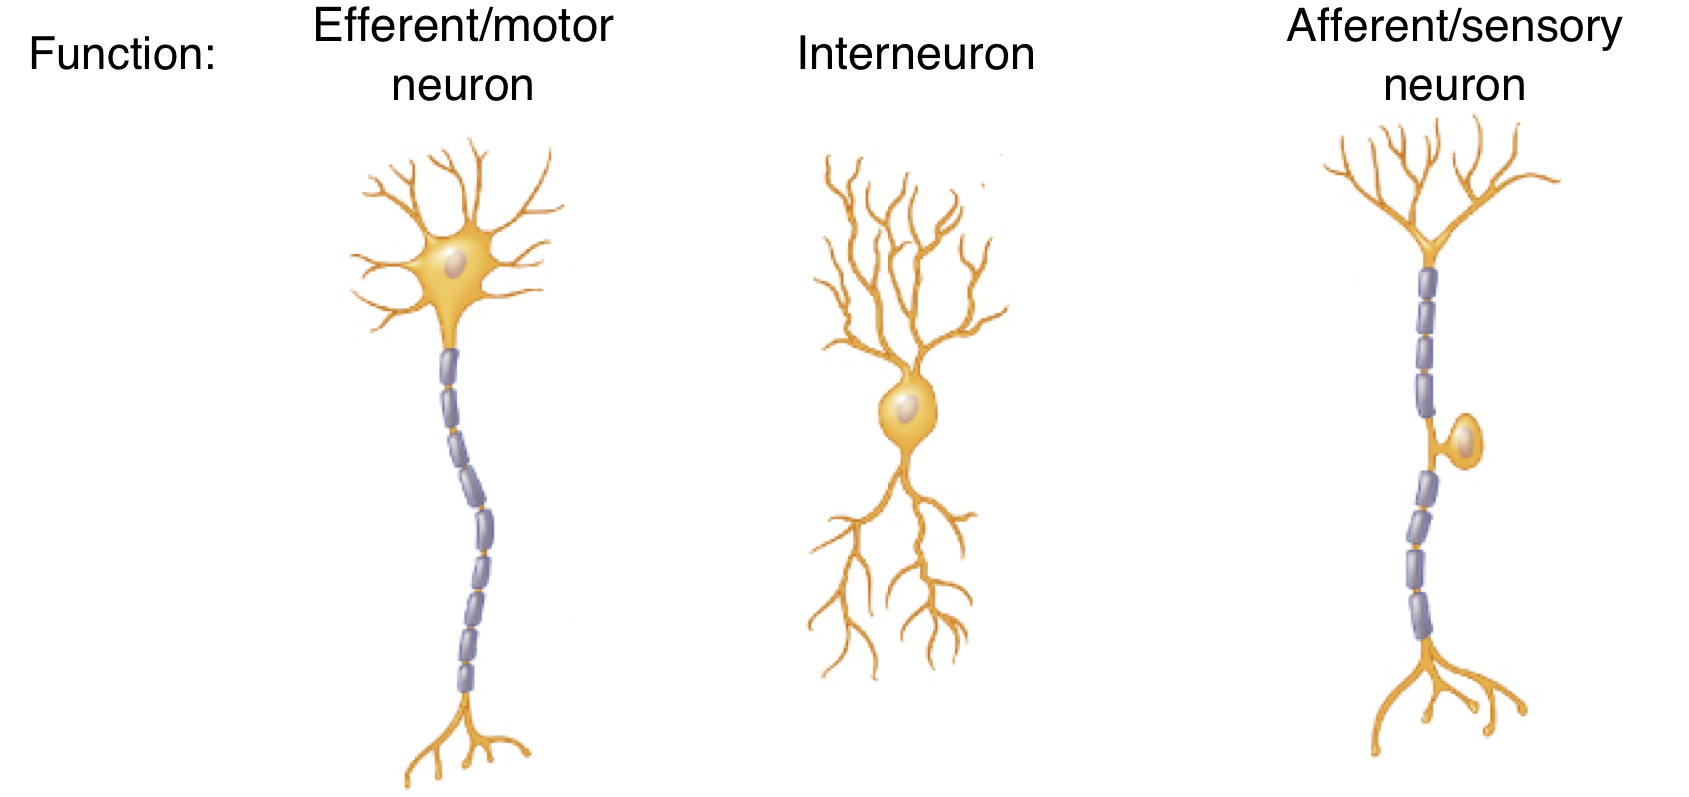 <ol><li><p>efferent/motor neuron (signal &quot;exits&quot;)</p></li><li><p>interneuron</p></li><li><p>afferent/sensory neuron (send signal inward)</p></li></ol>